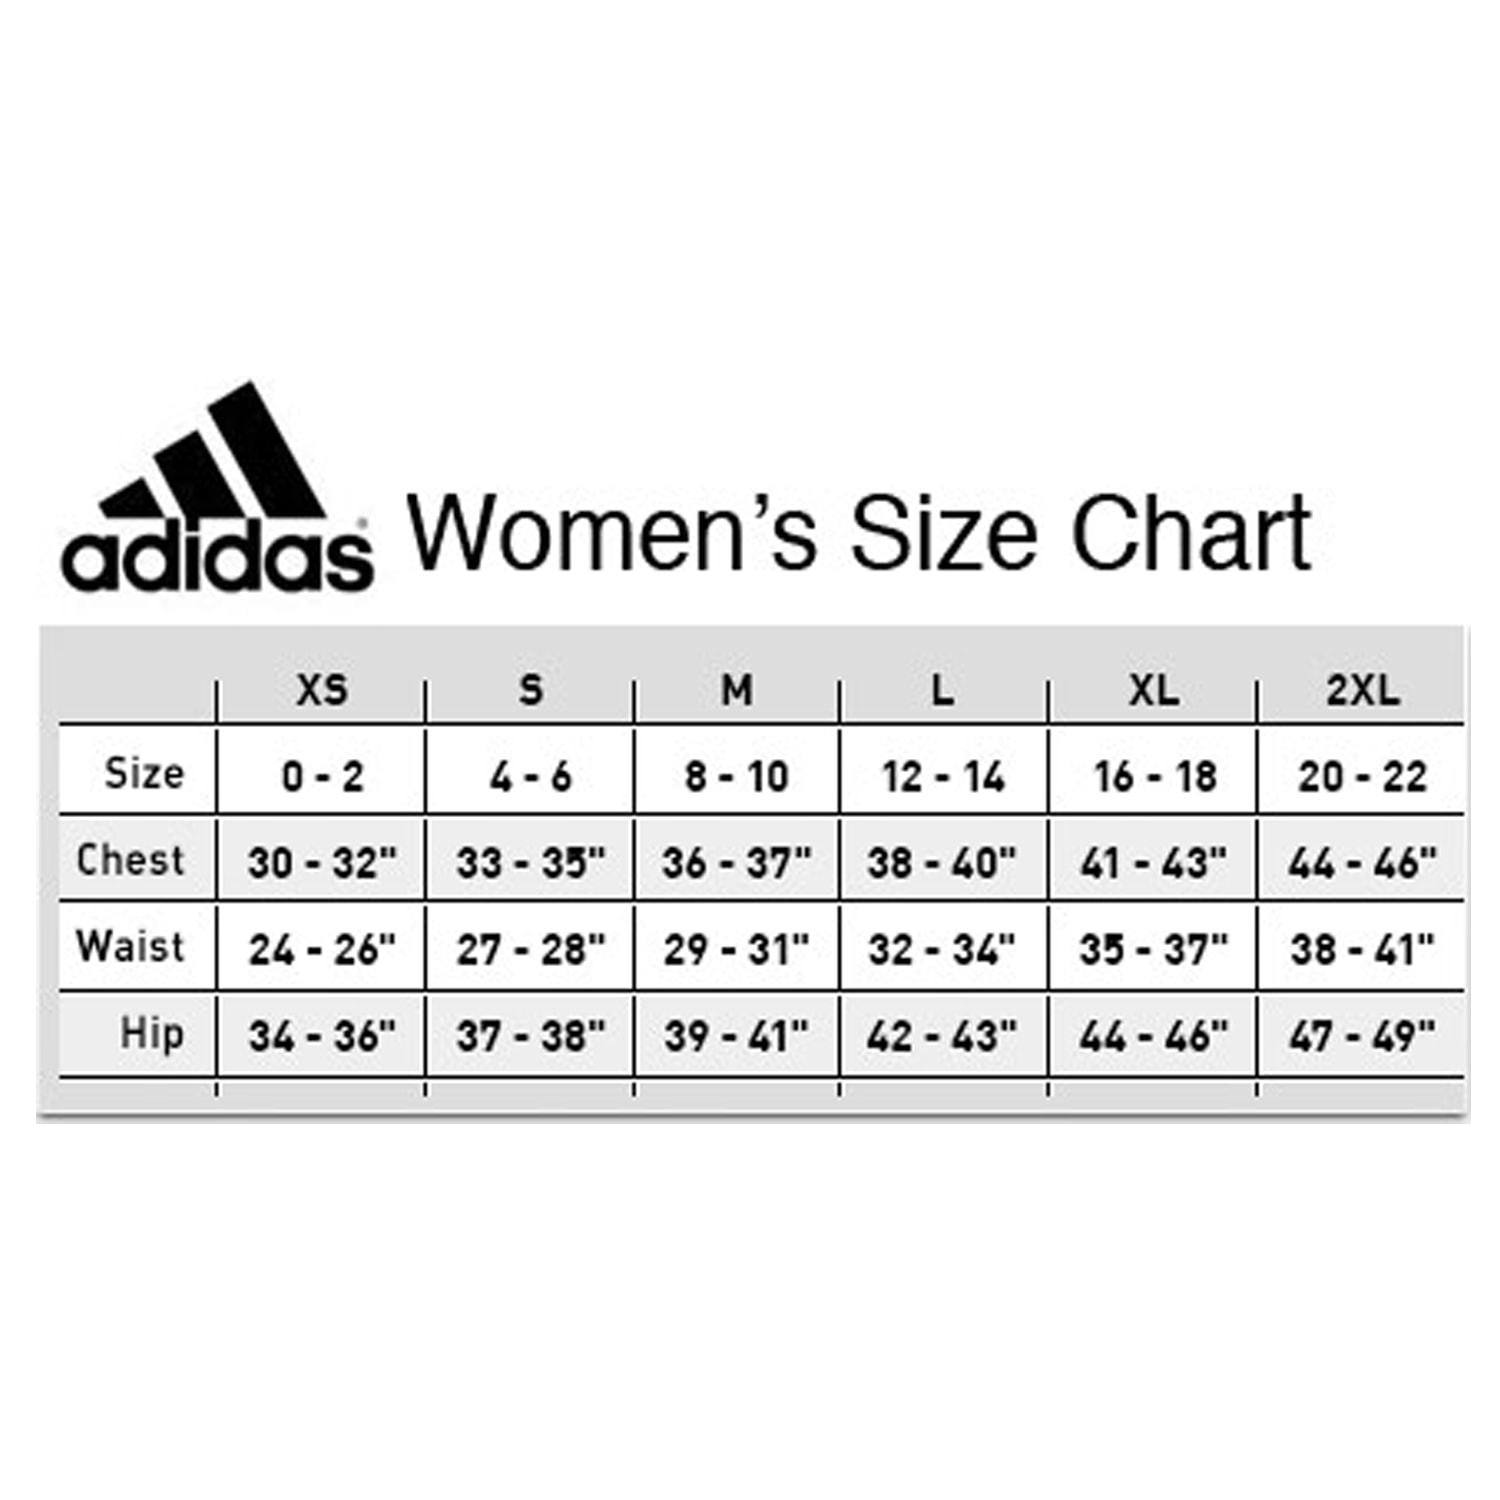 adidas women's jersey size chart